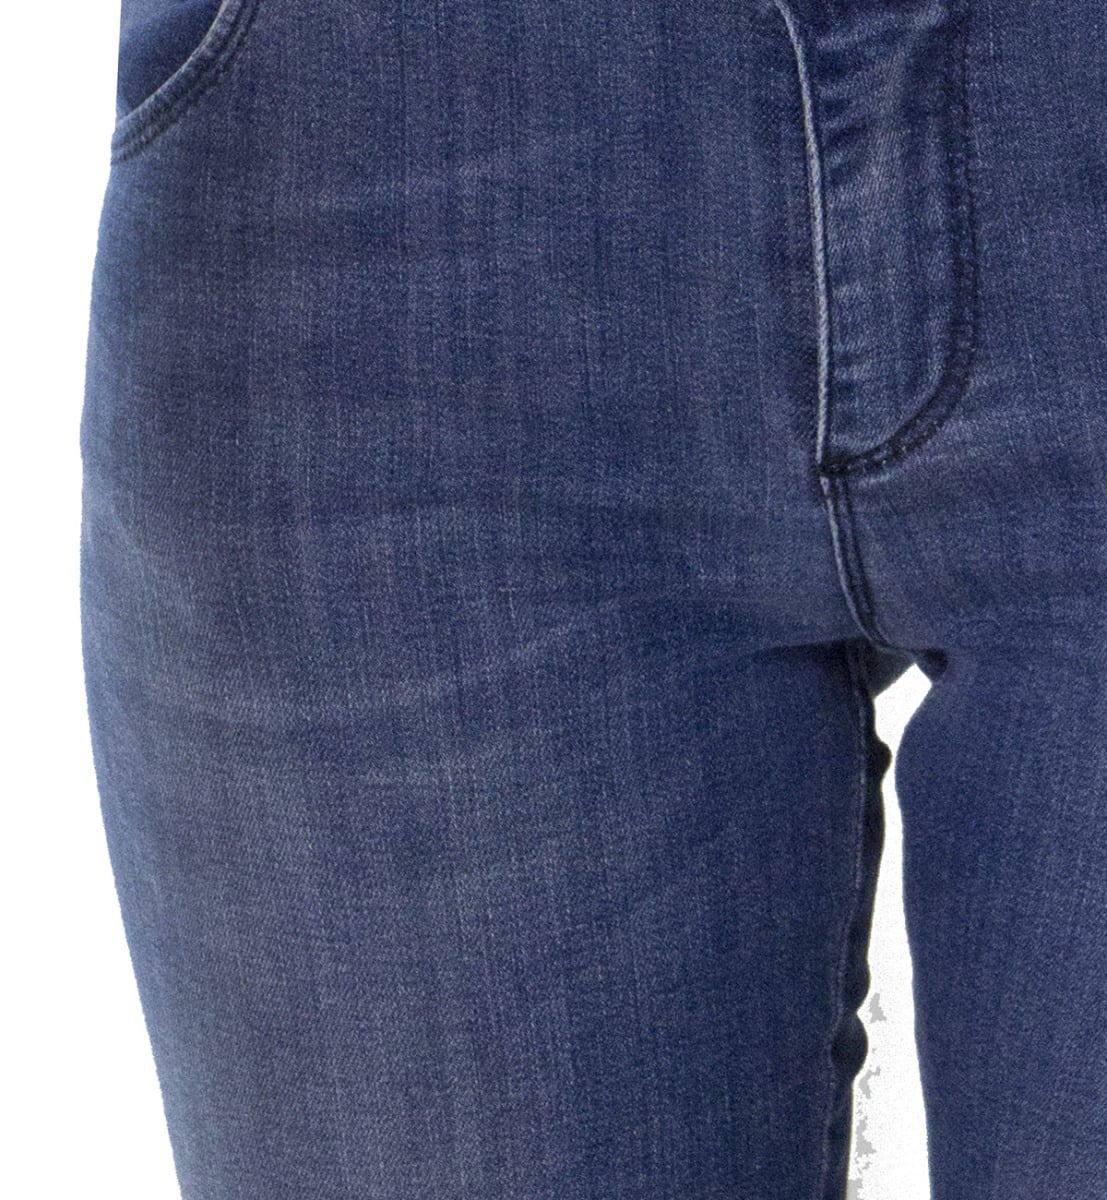 Jeans donna skinny elasticizzato lavaggio 3 blue chiaro modello 5 tasche effetto push up